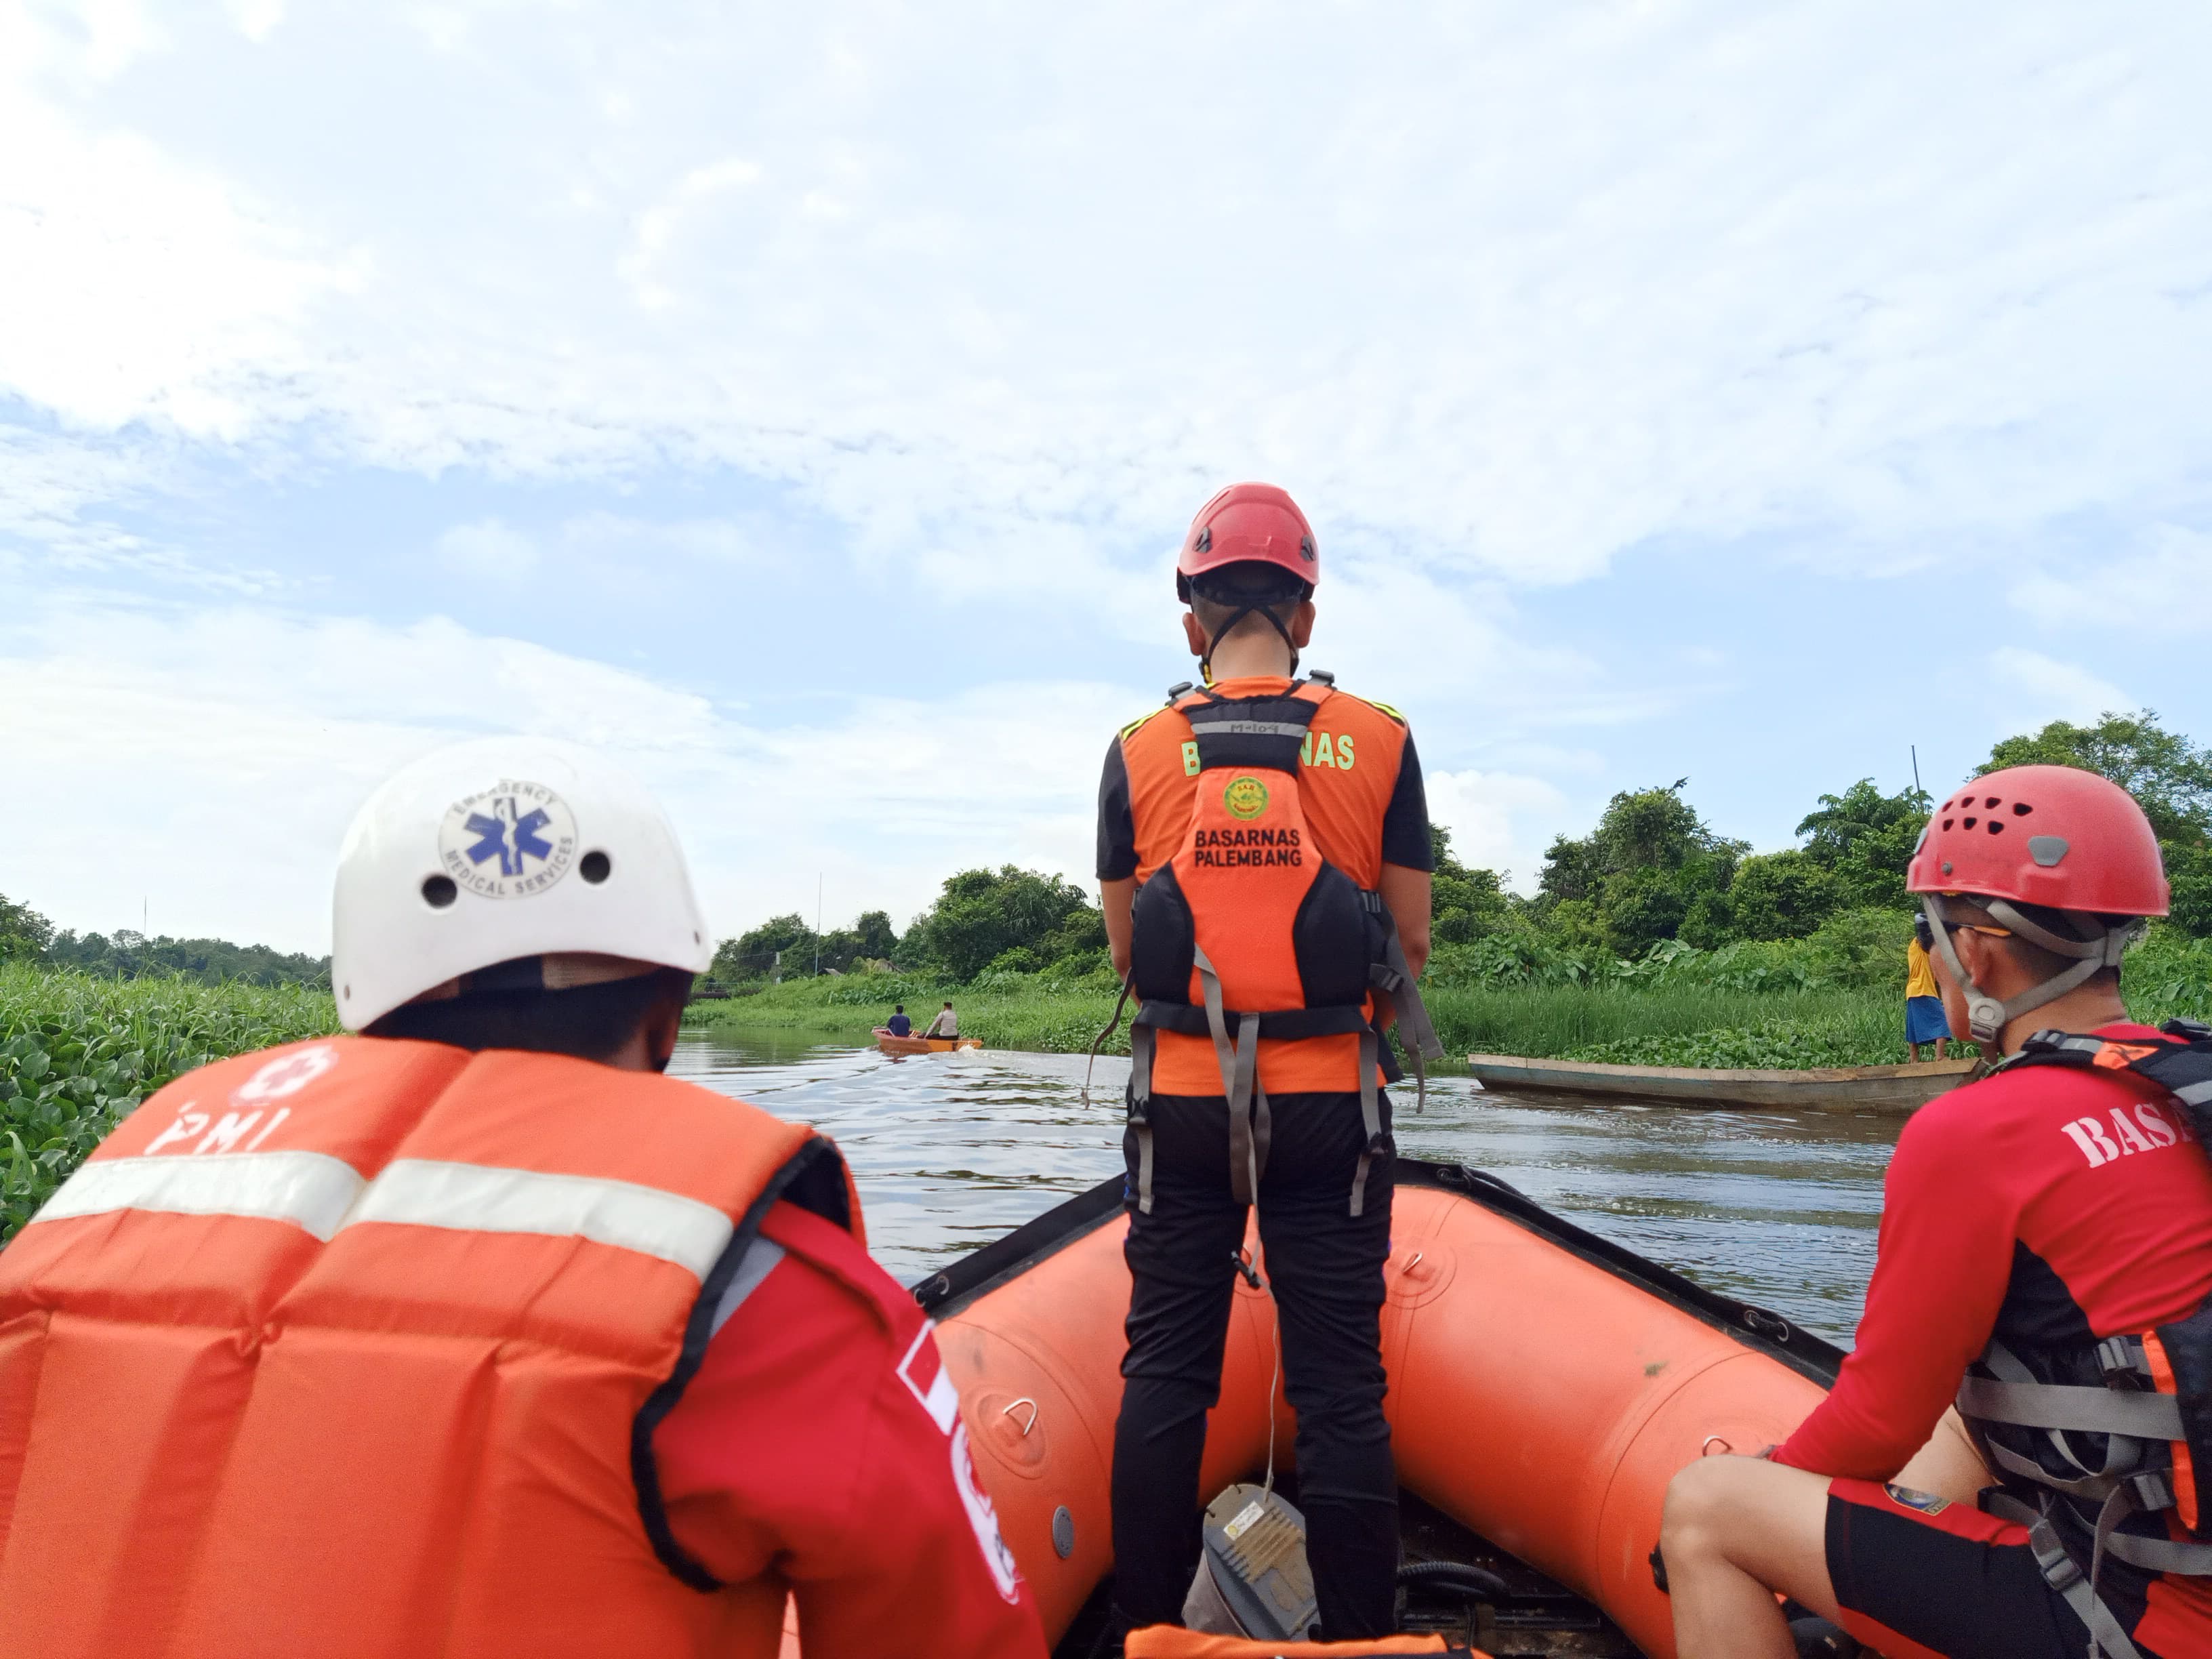 Kondisi Mabuk, Yanto Terpeleset dan Hilang di Sungai Borang pada Lebaran Kedua, Basarnas Lakukan Pencarian